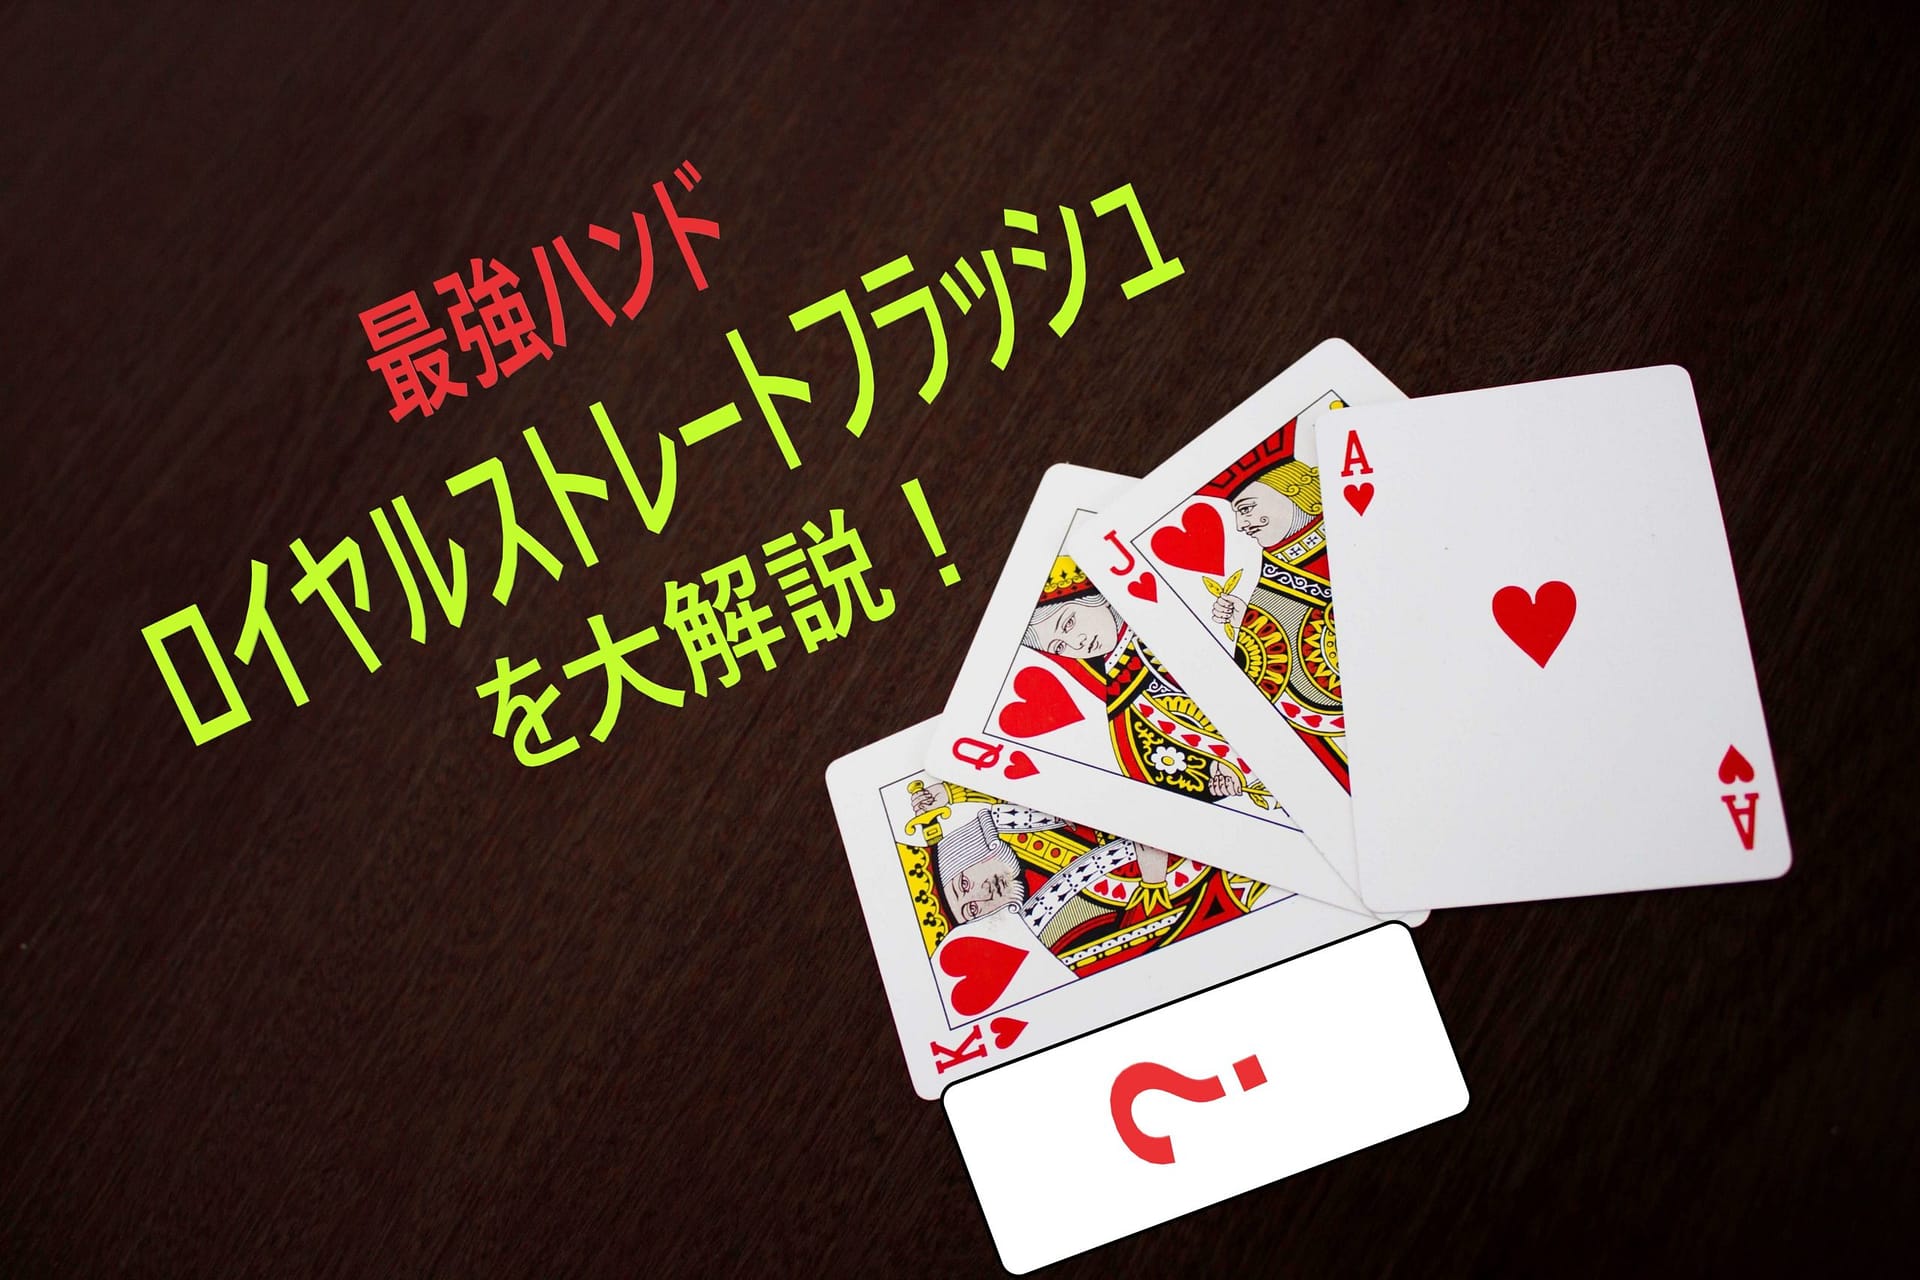 無敵のポーカー・ロイヤルストレートフラッシュを解説 - verajohn-jp